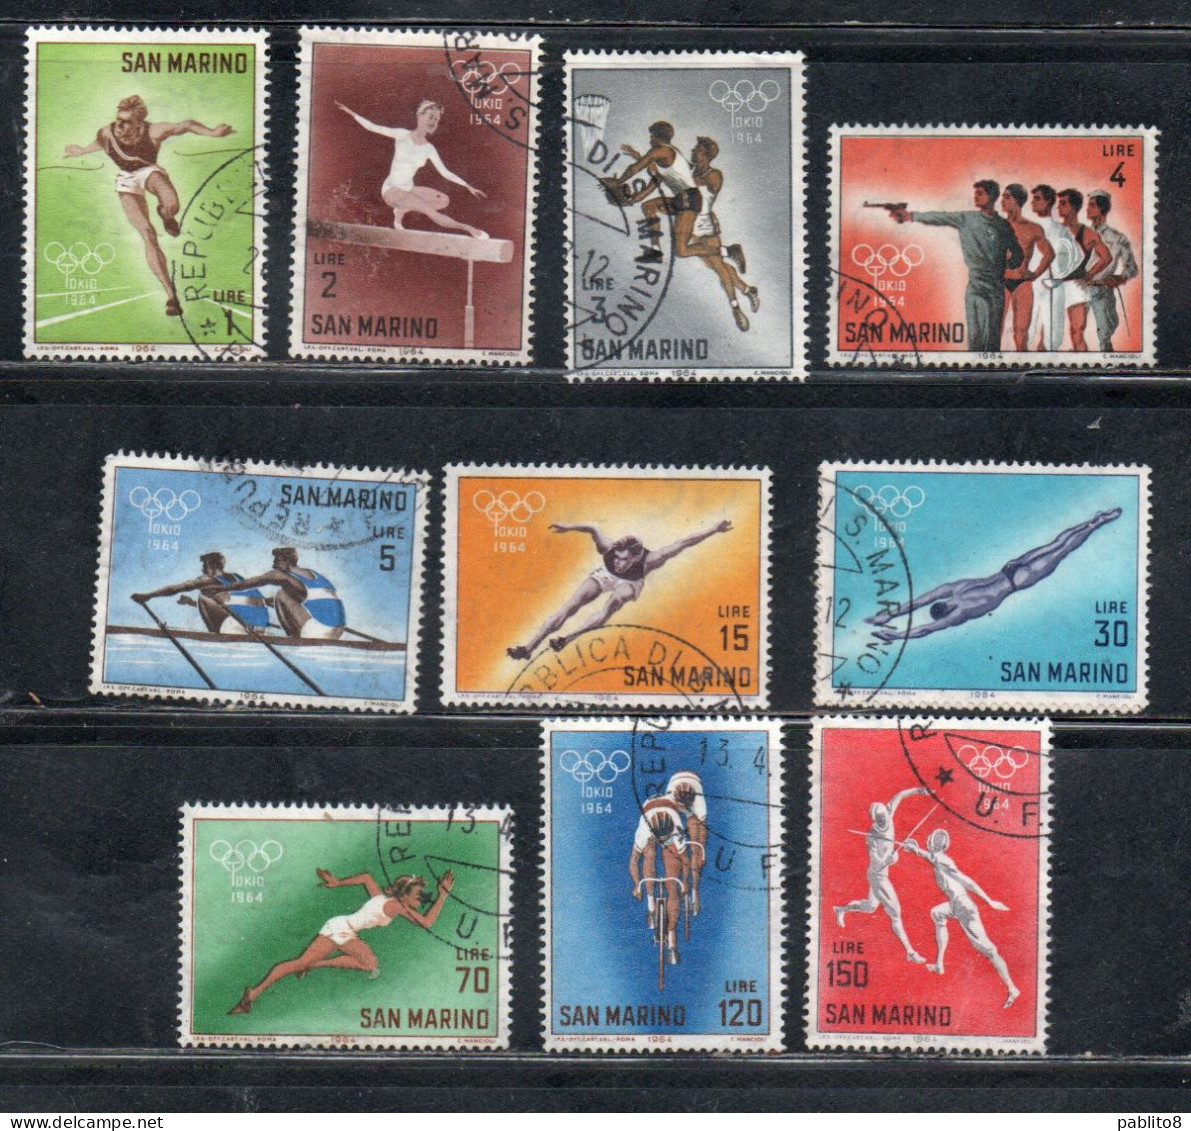 REPUBBLICA DI SAN MARINO 1964 OLIMPIADI DI TOKIO GIOCHI OLIMPICI OLYMPIC GAMES SERIE COMPLETA COMPLETE SET USATA USED - Used Stamps